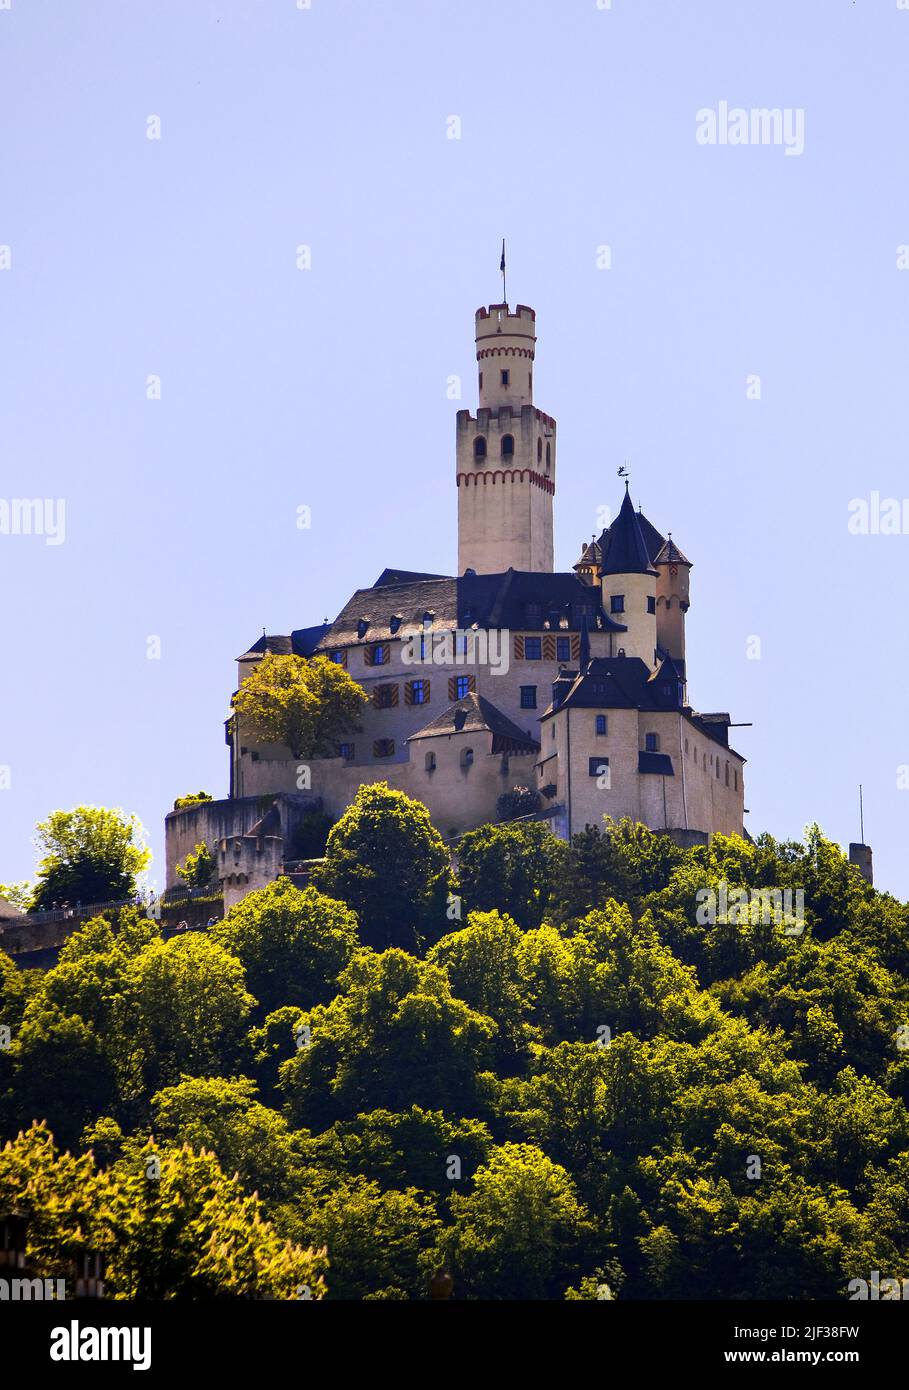 Le château de Marksburg, le seul château médiéval au sommet d'une colline sur le Rhin moyen qui n'a jamais été détruit, Allemagne, Rhénanie-Palatinat, Braubach Banque D'Images